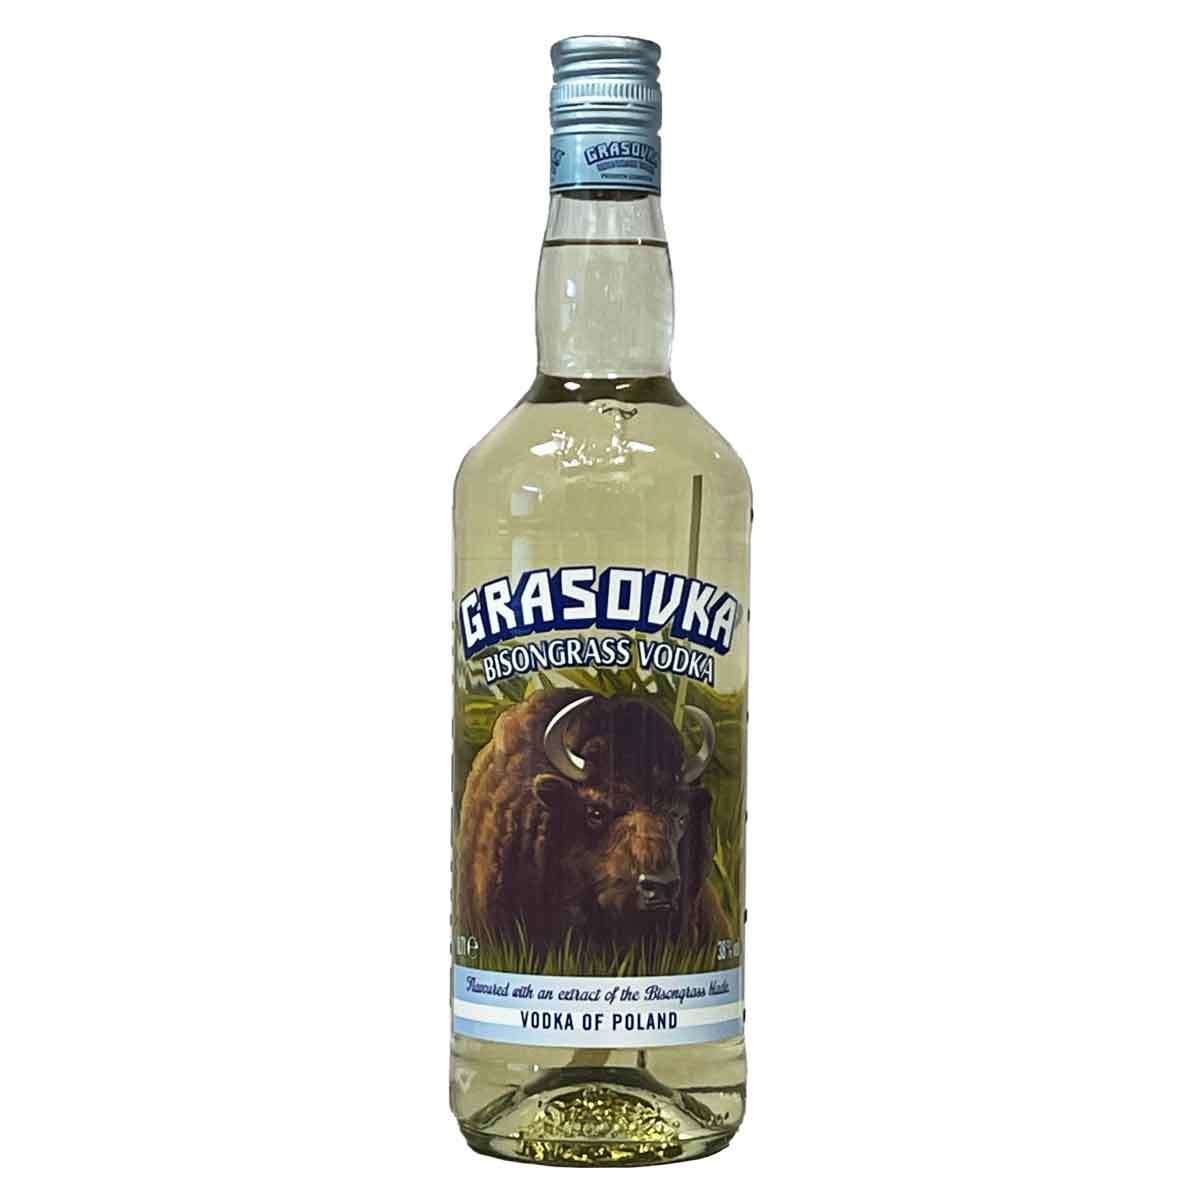 (0,7l) Viel-Durst Grasovka Vodka | Bisongrass 38%